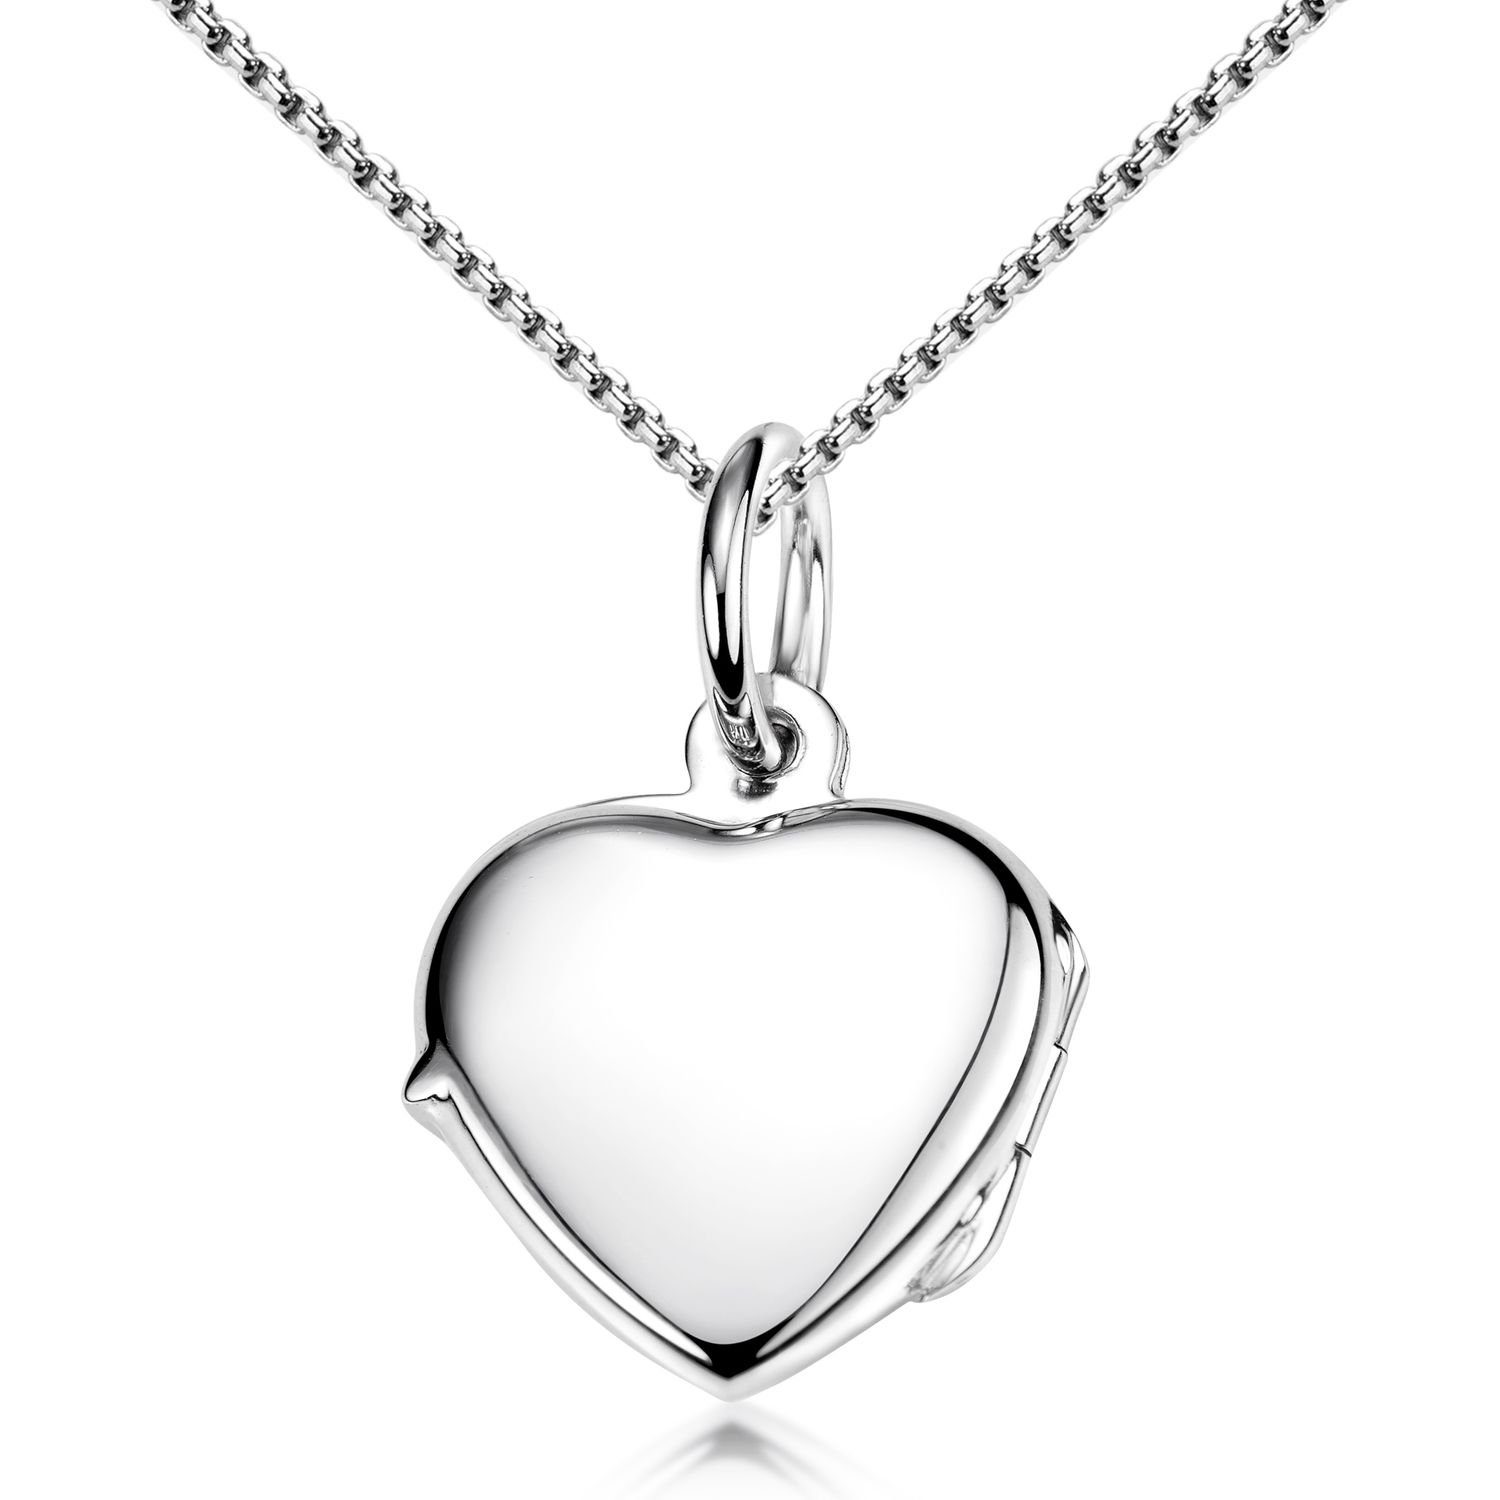 Materia Amulett Herz Liebe Freundschaft Silber Hochglanz KA-479, 925 Sterling Silber, rhodiniert